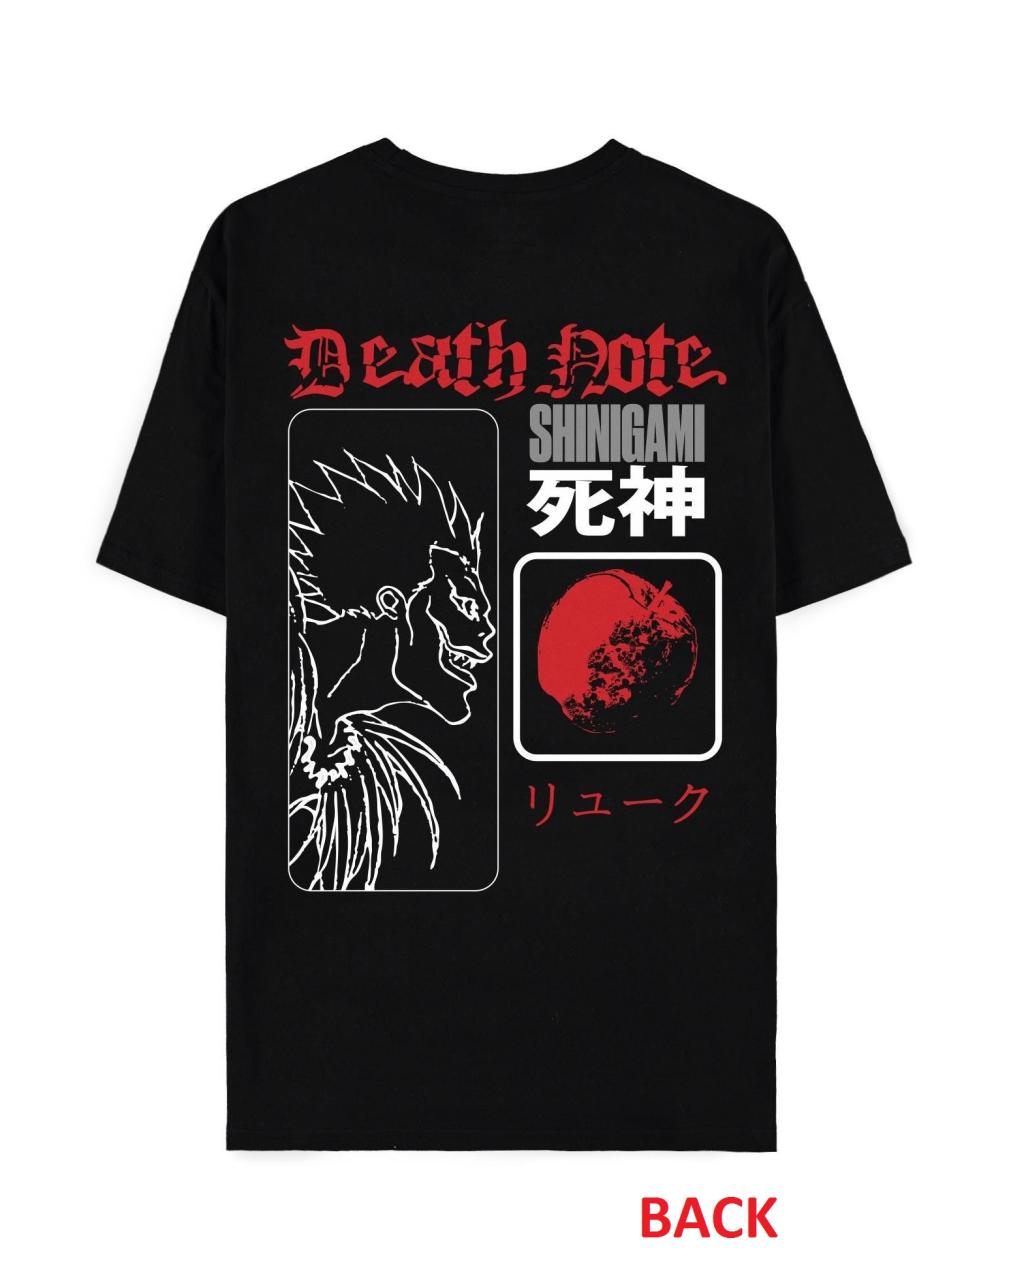 DEATH NOTE - Eat the Apple - Men's T-shirt (2XL)